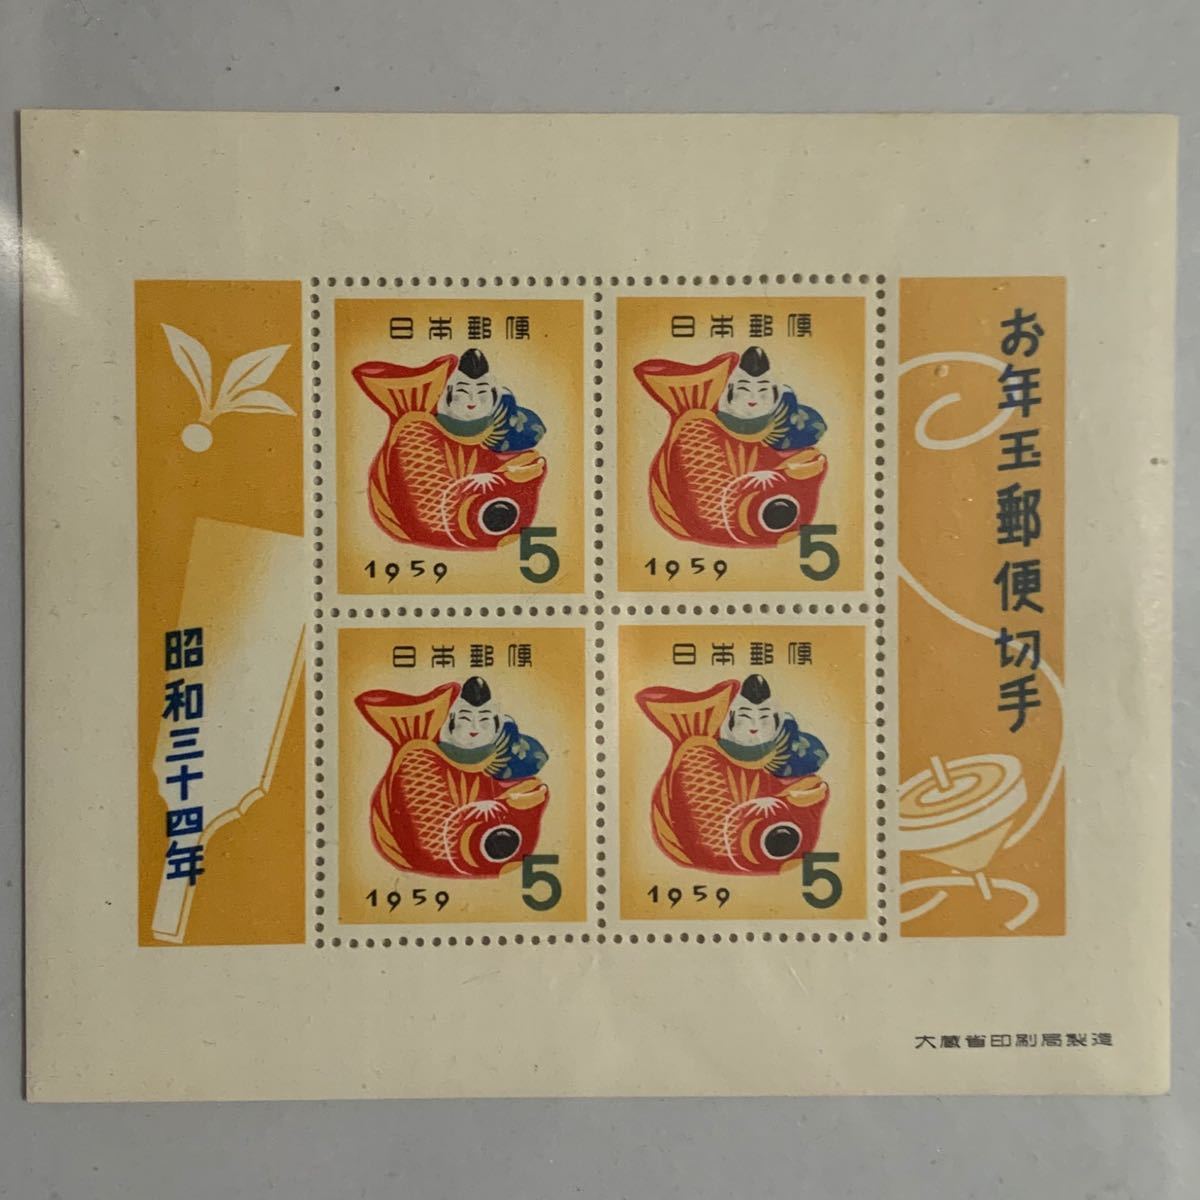 年賀切手　お年玉切手　切手 日本切手 小型シート　昭和34年 鯛えびす1959年